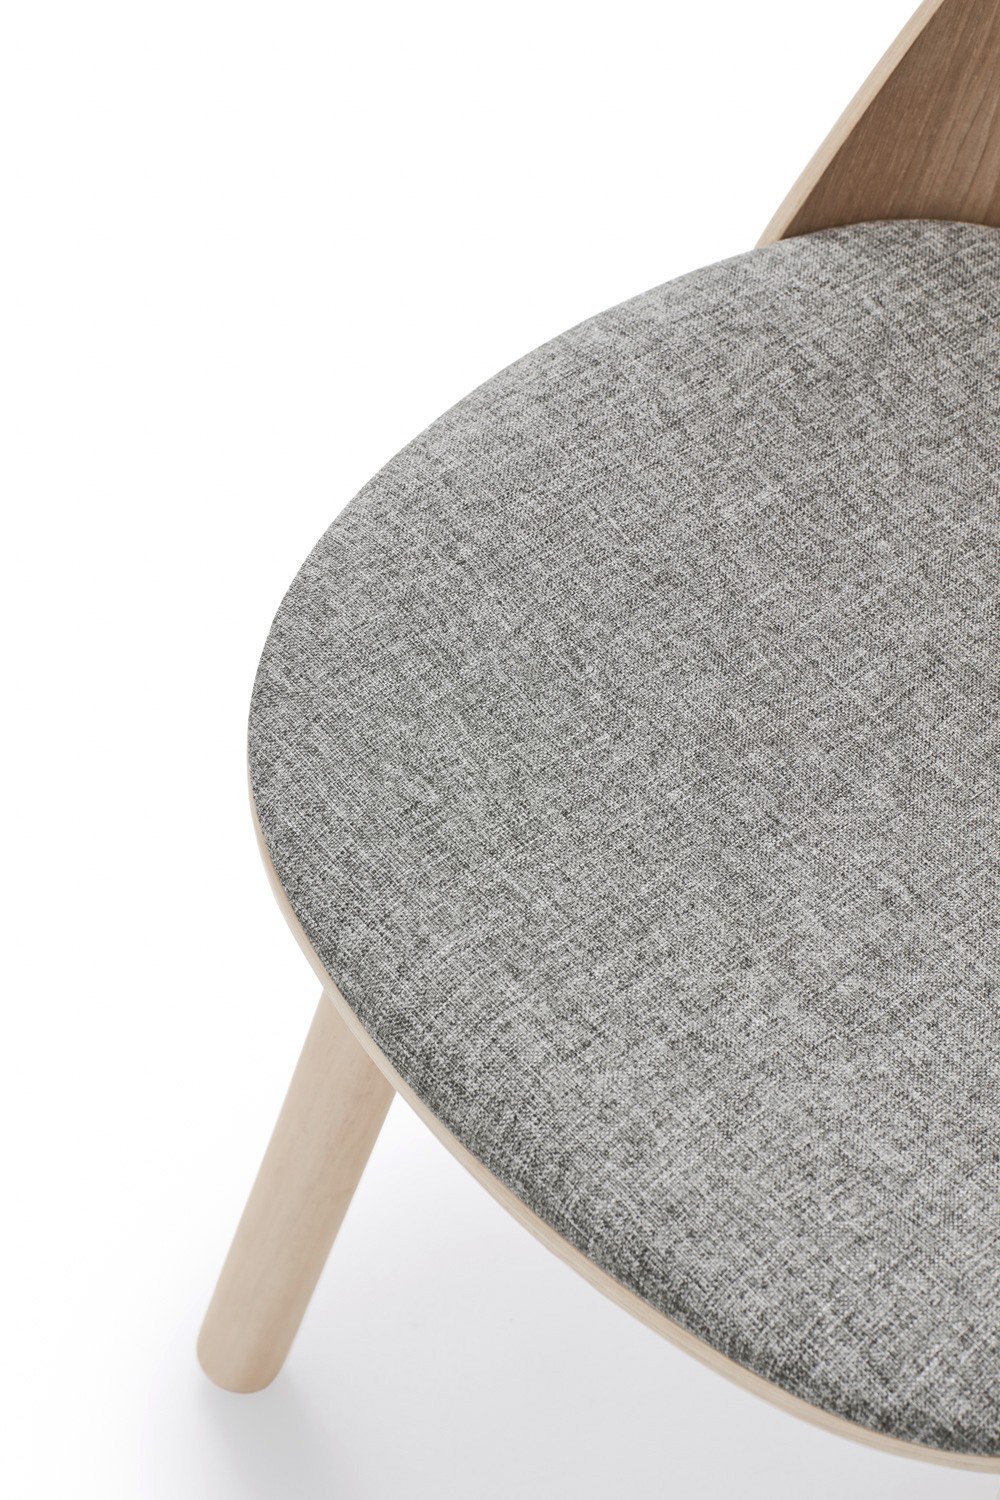 Krzesło tapicerowane Uma z podłokietnikami naturalne